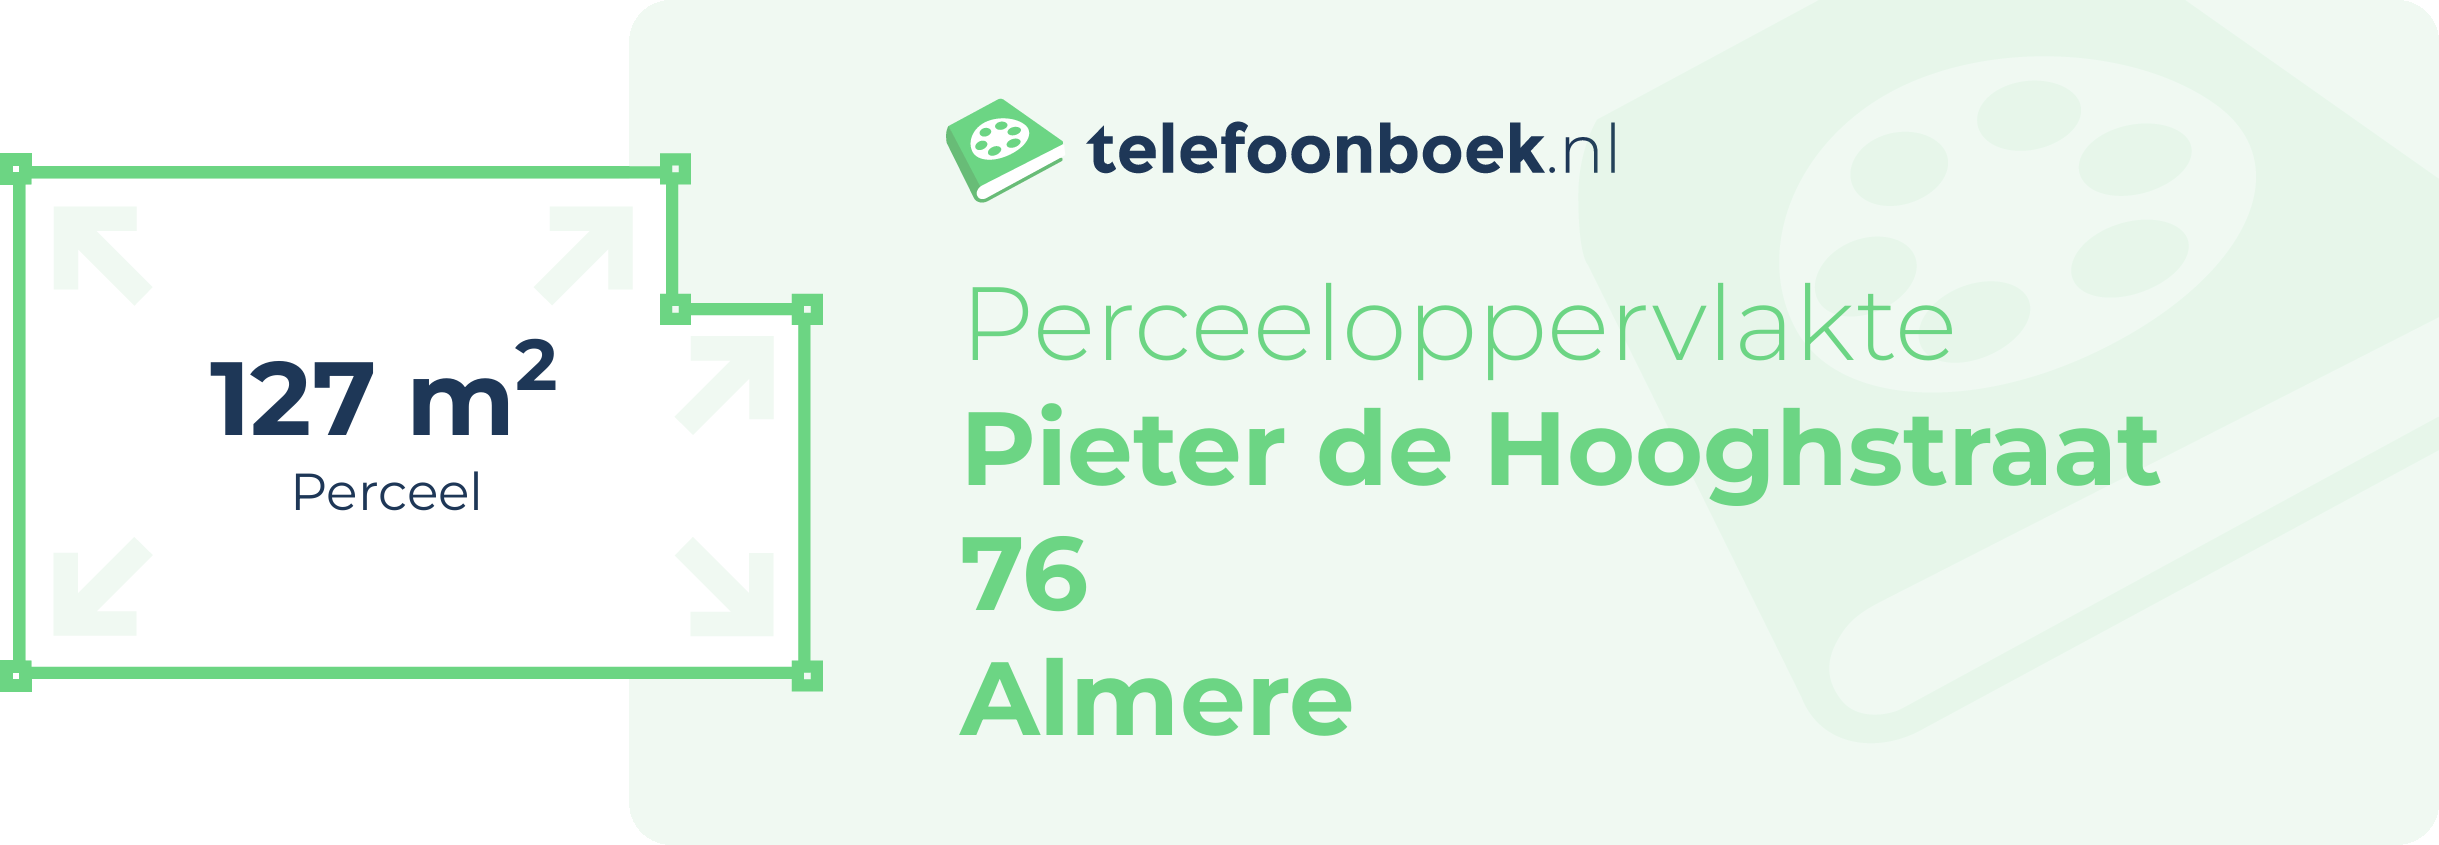 Perceeloppervlakte Pieter De Hooghstraat 76 Almere